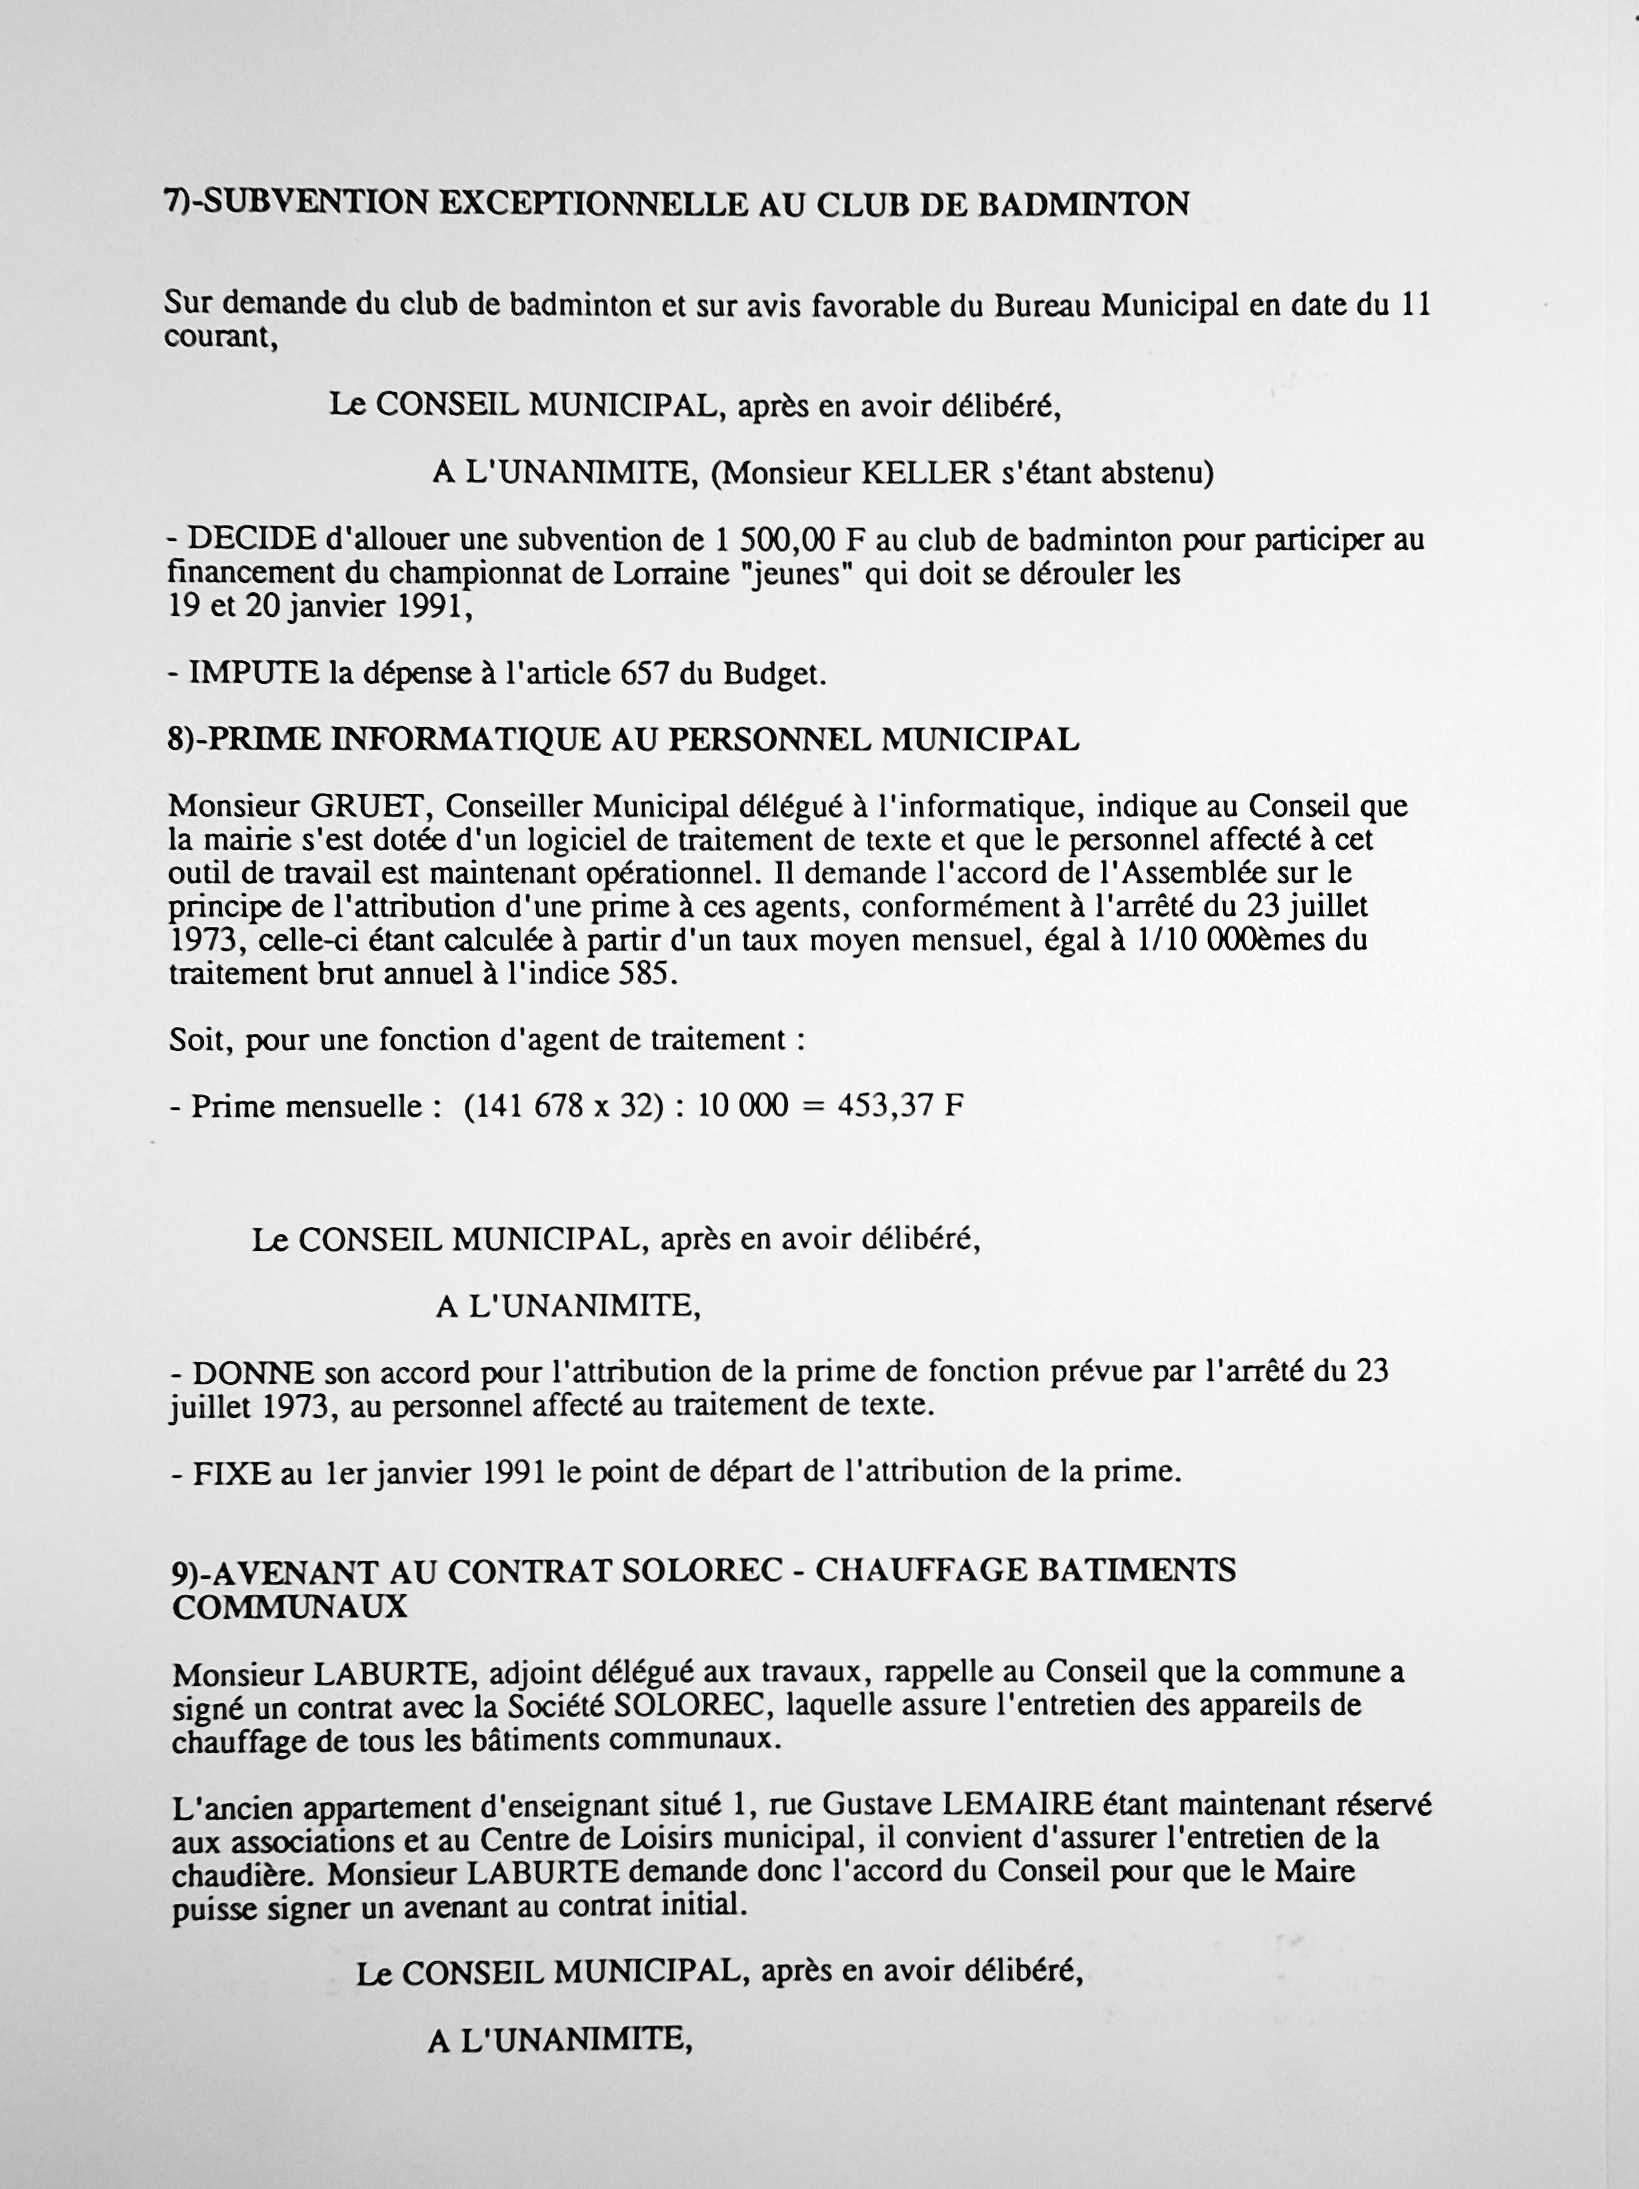 Feuillet_044A-1989-1992.jpg